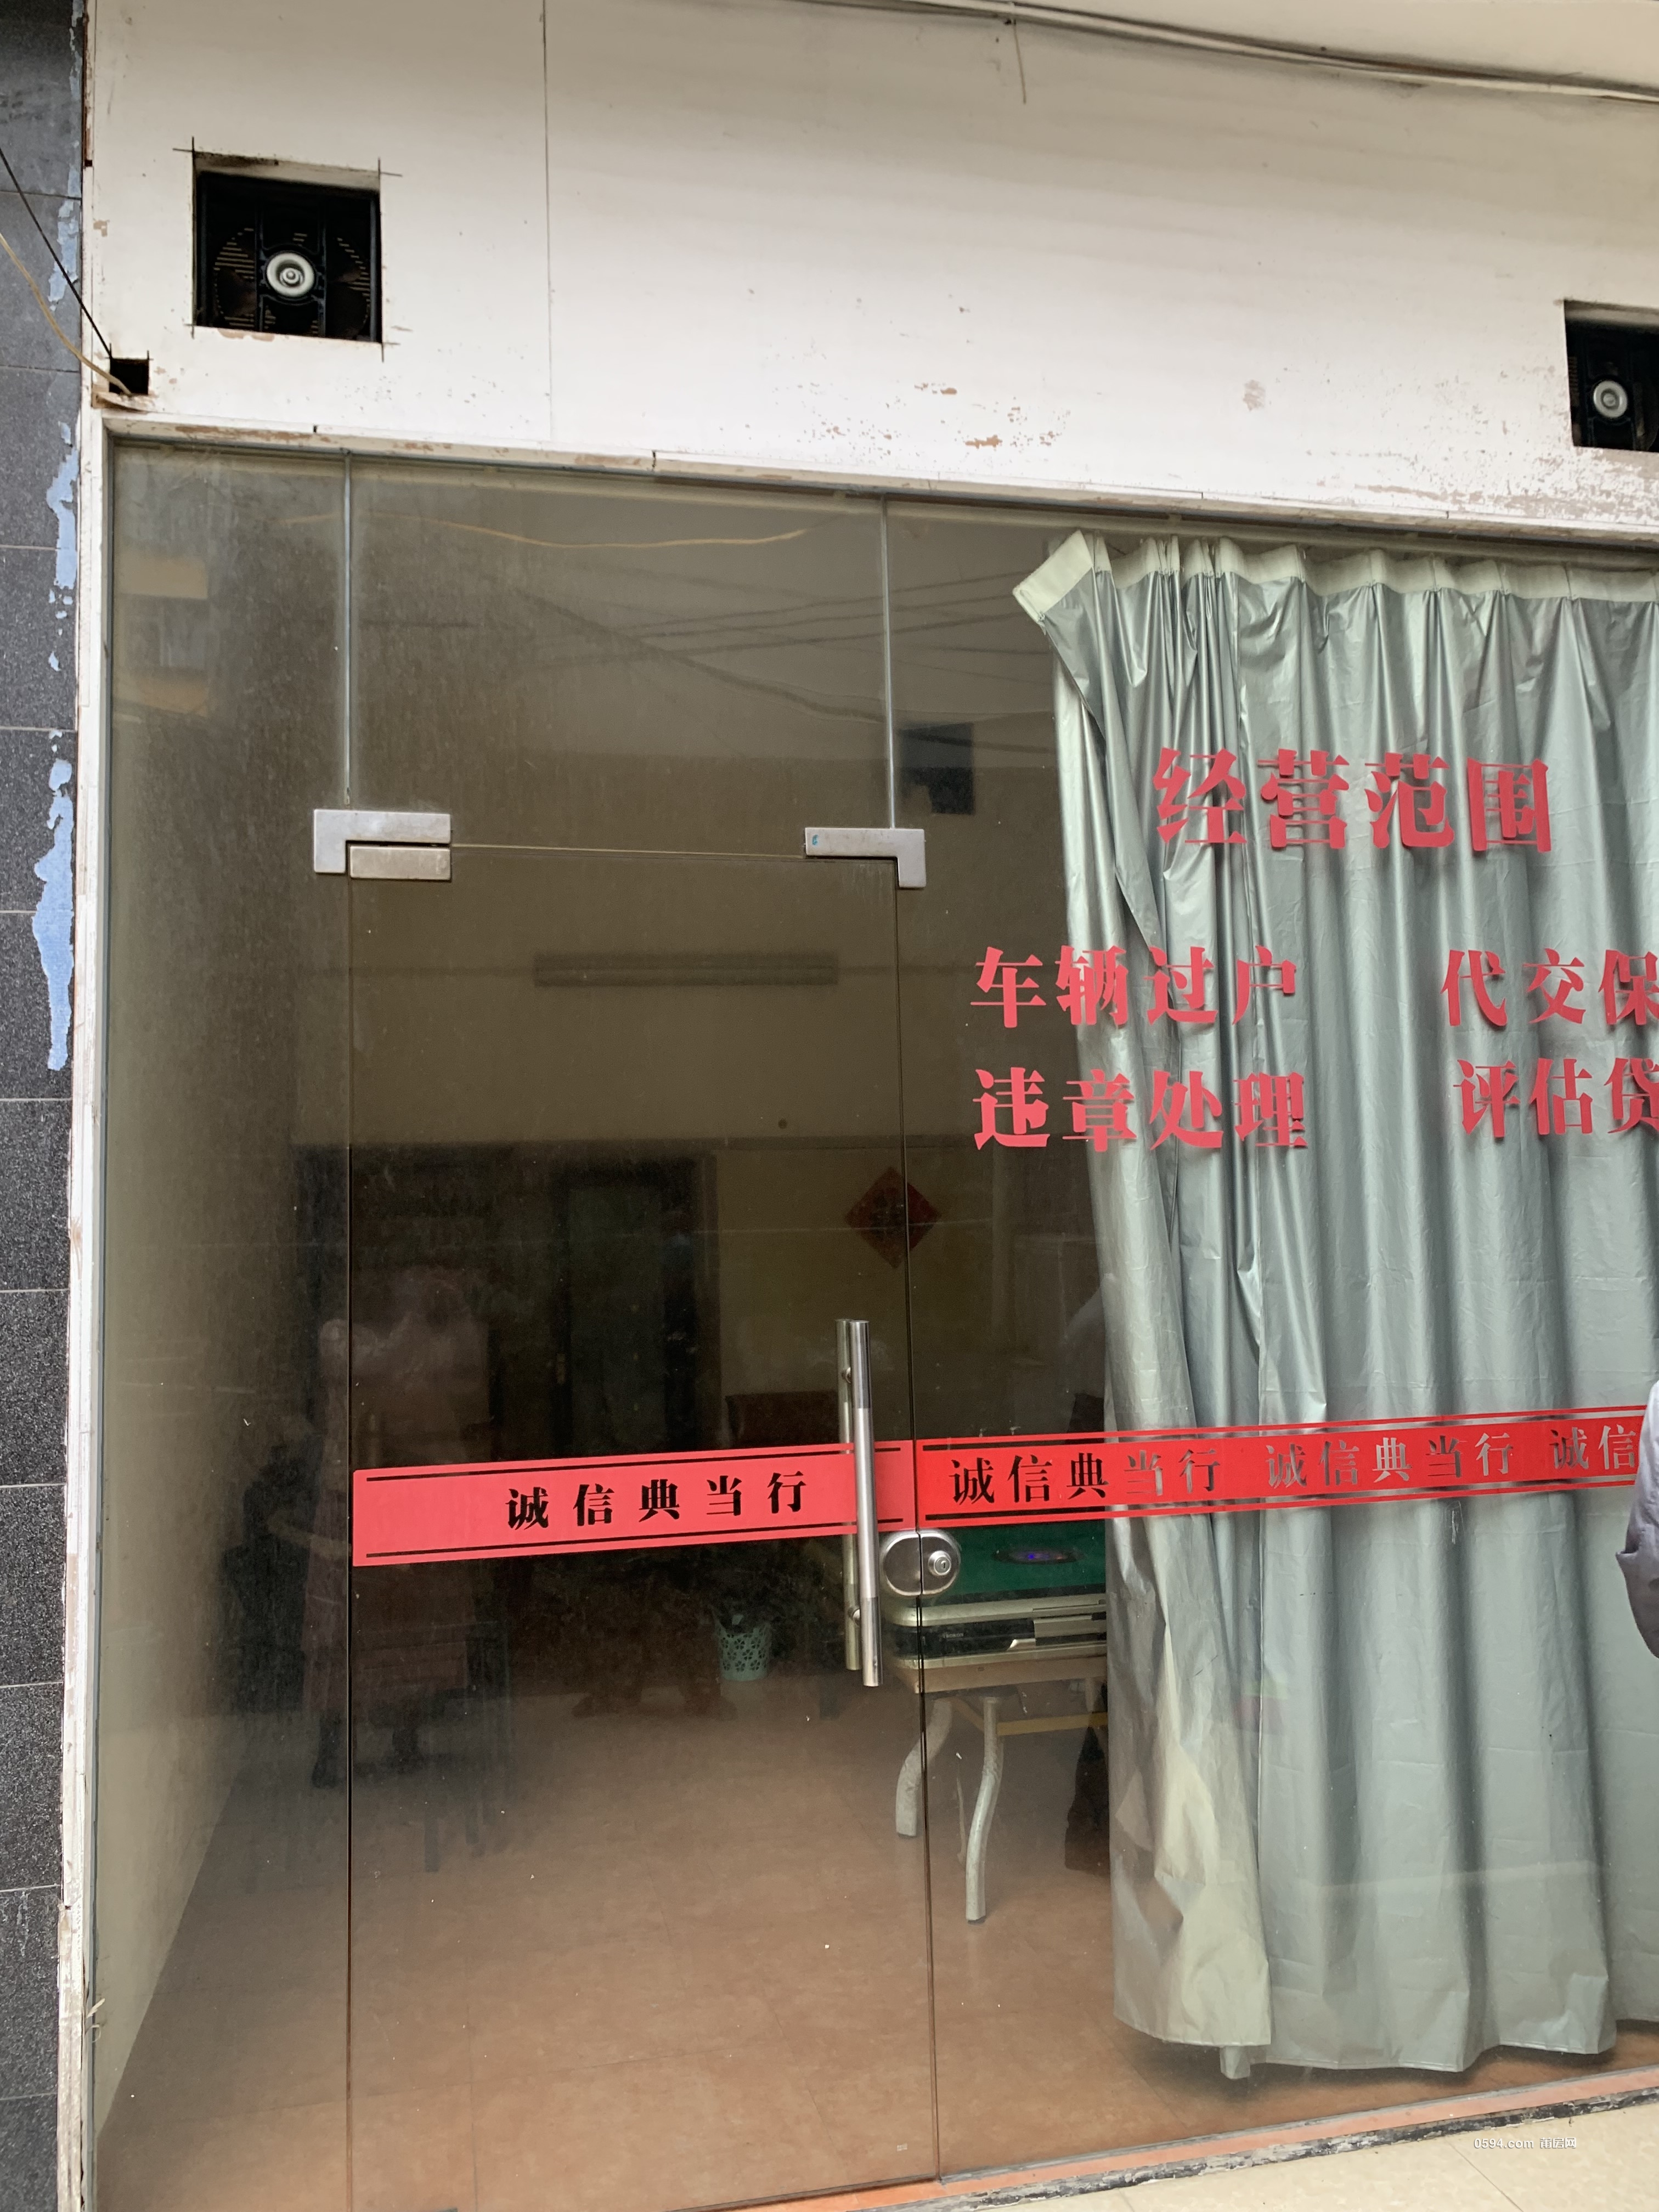 仙游县鲤城街道南大路169-11号店面租赁项目结果公示